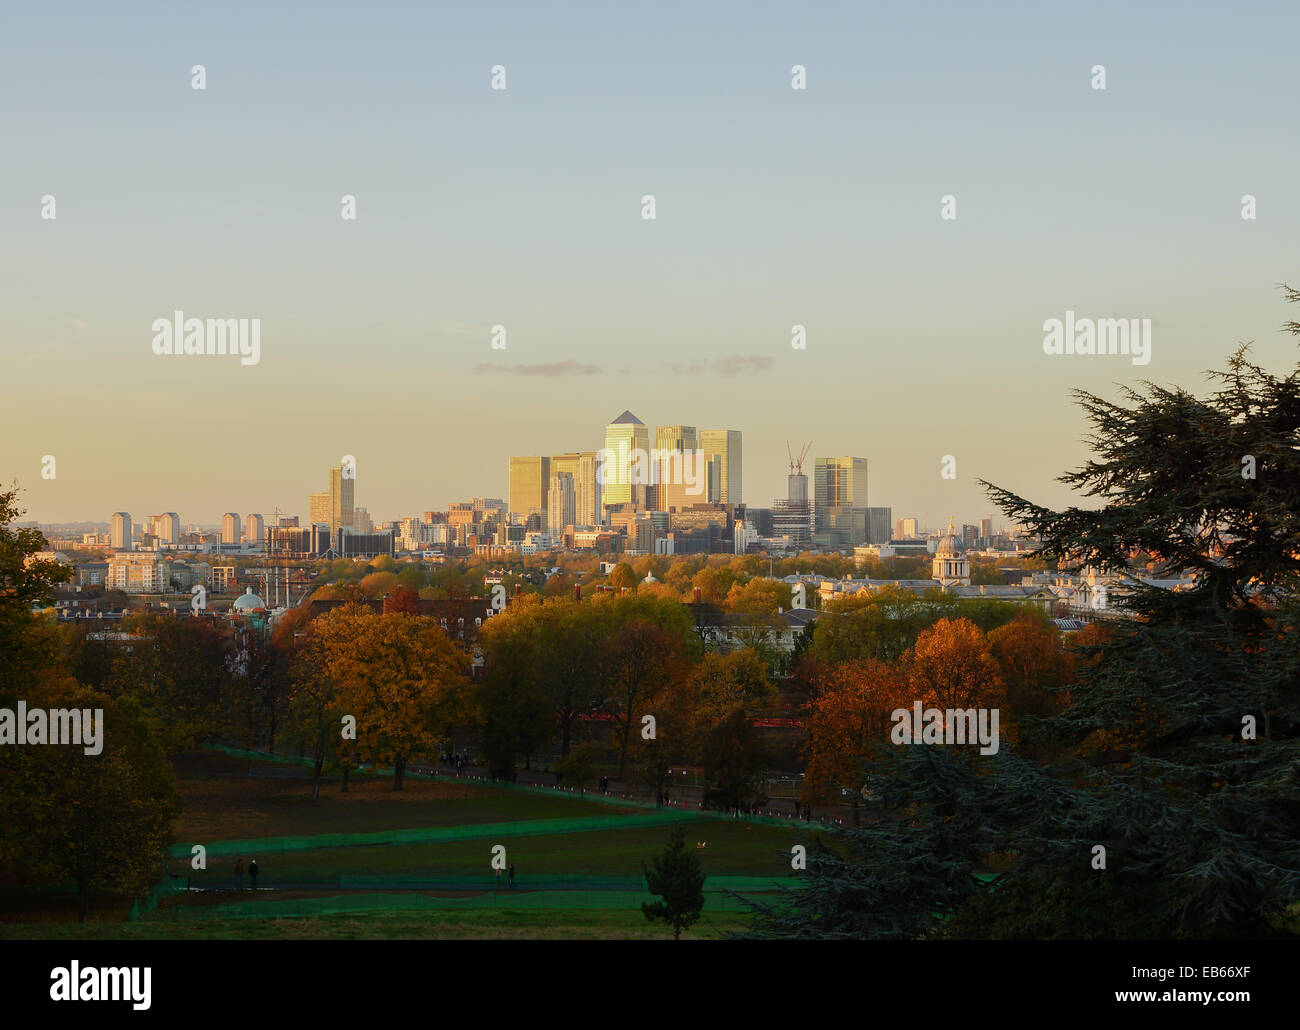 Vista de la puesta de sol de la ciudad de Londres, Canary Wharf, tomada desde el parque Greenwich Foto de stock